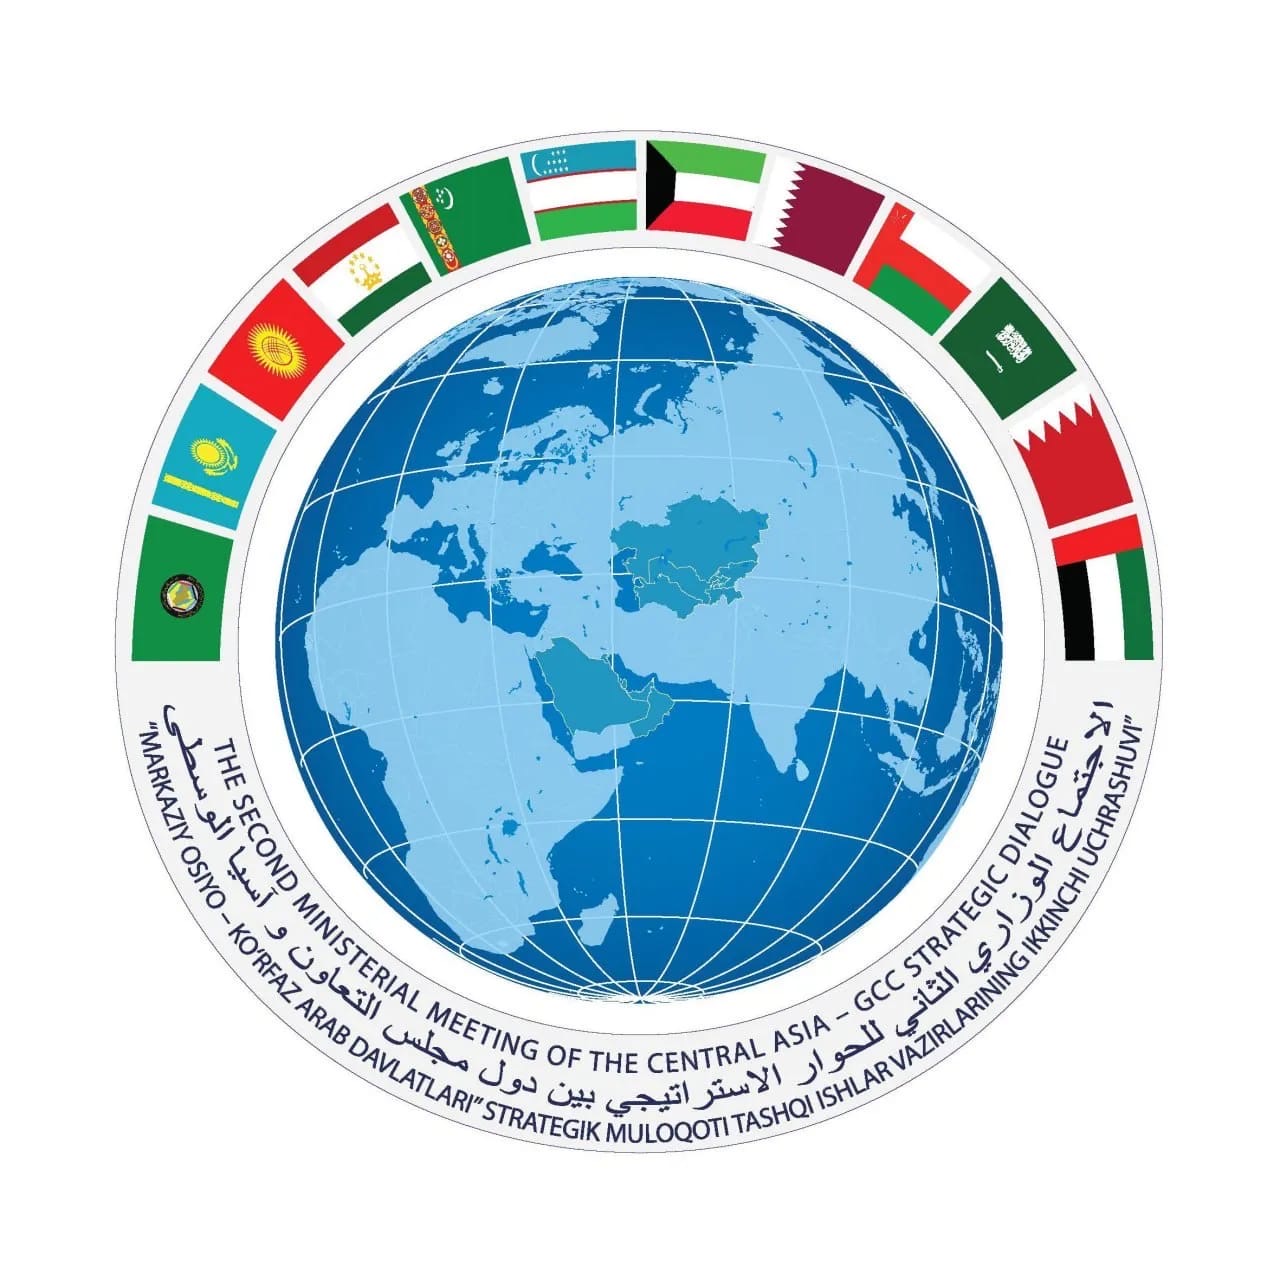 الاجتماع الوزاري الثاني للحوار الاستراتيجي بين دول مجلس التعاون وآسيا الوسطى